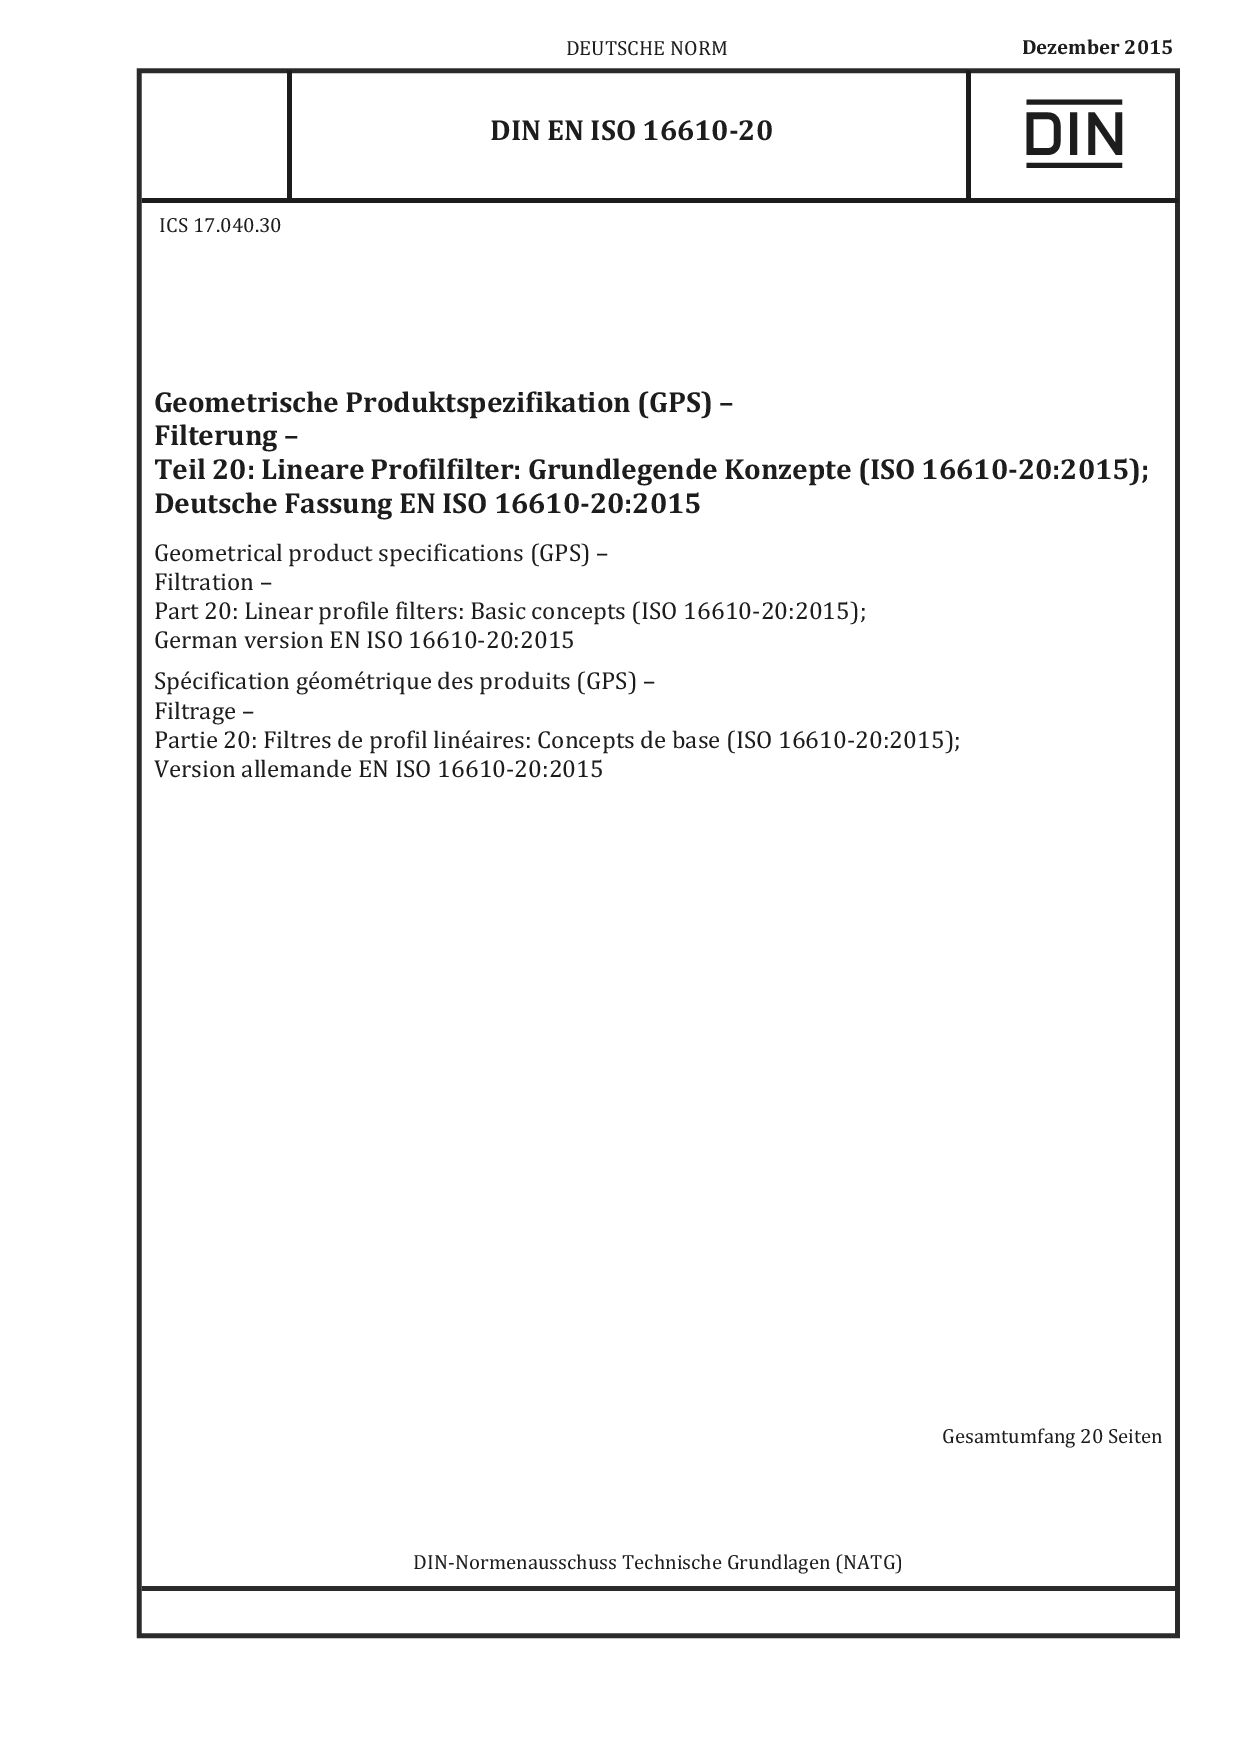 DIN EN ISO 16610-20:2015封面图